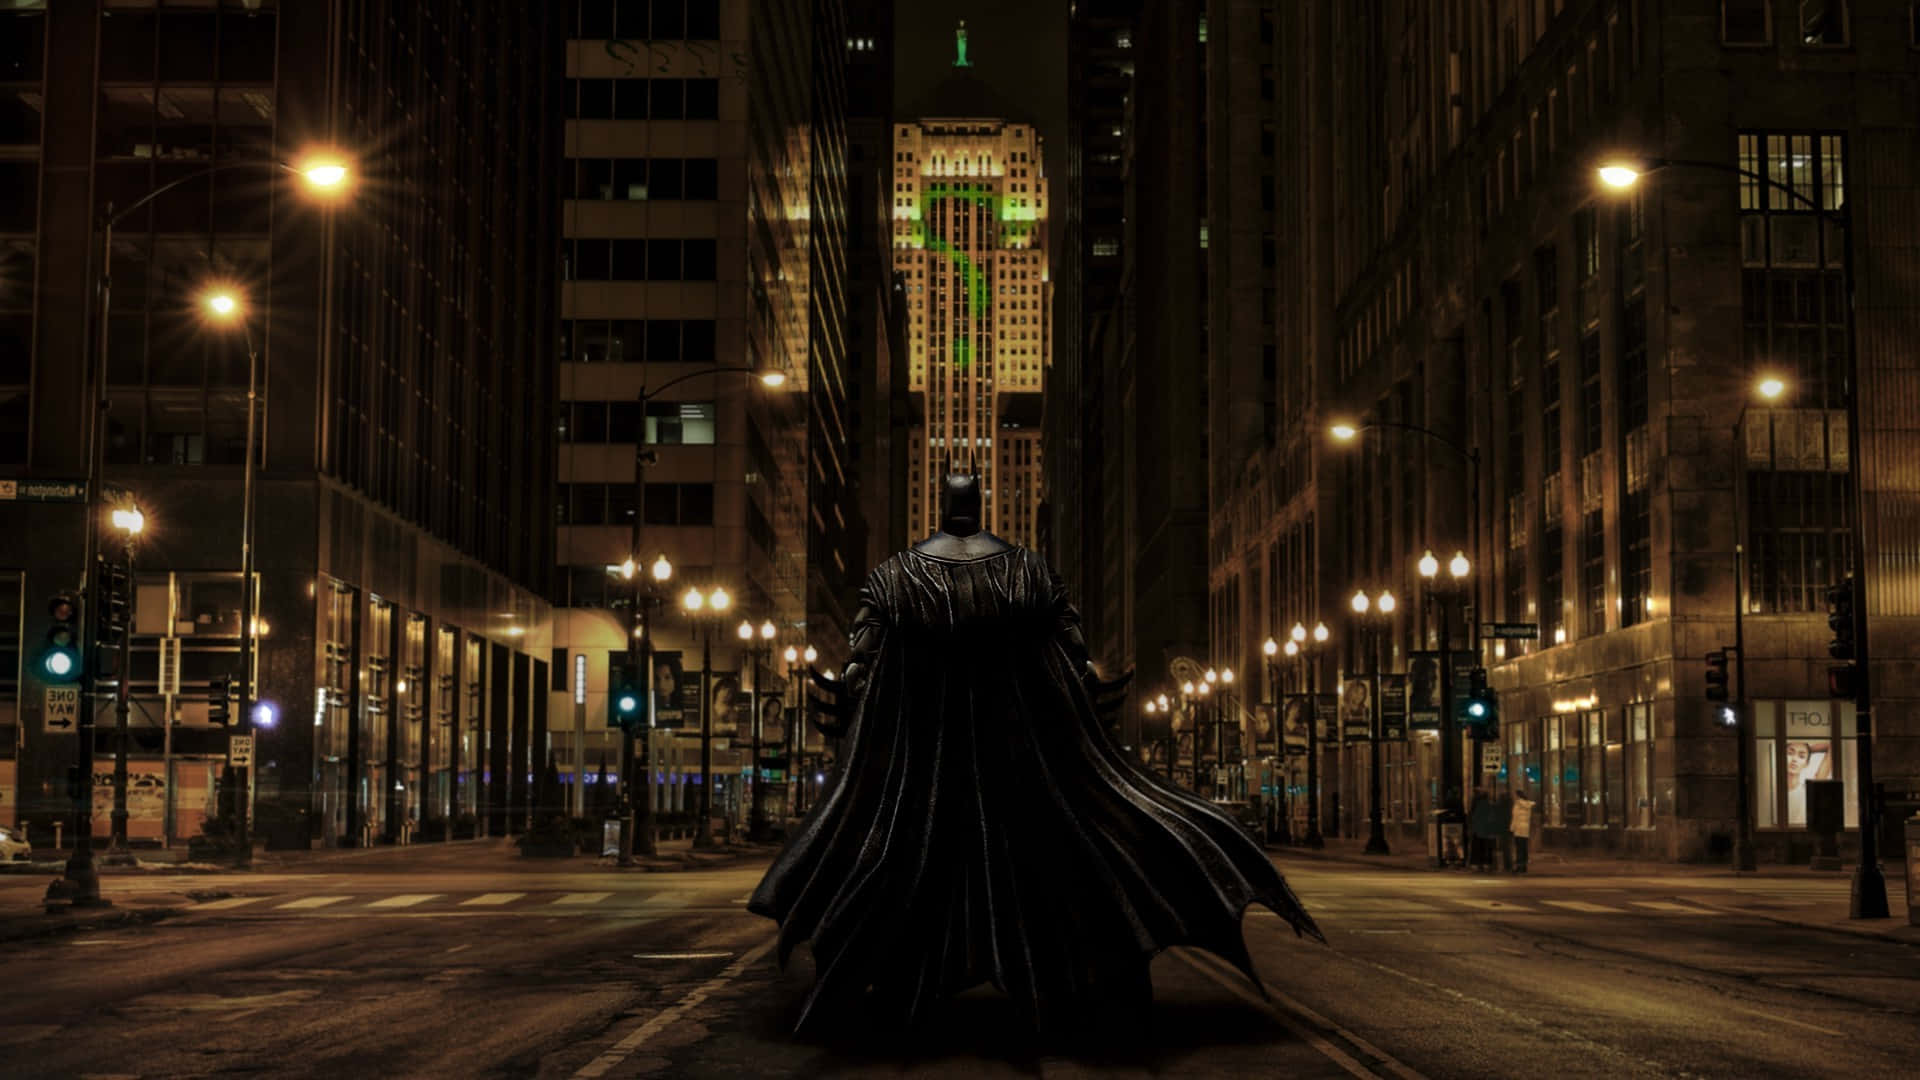 Rörelseoch Liv I Gotham City, Hem Till Den Berömda Batman. Wallpaper